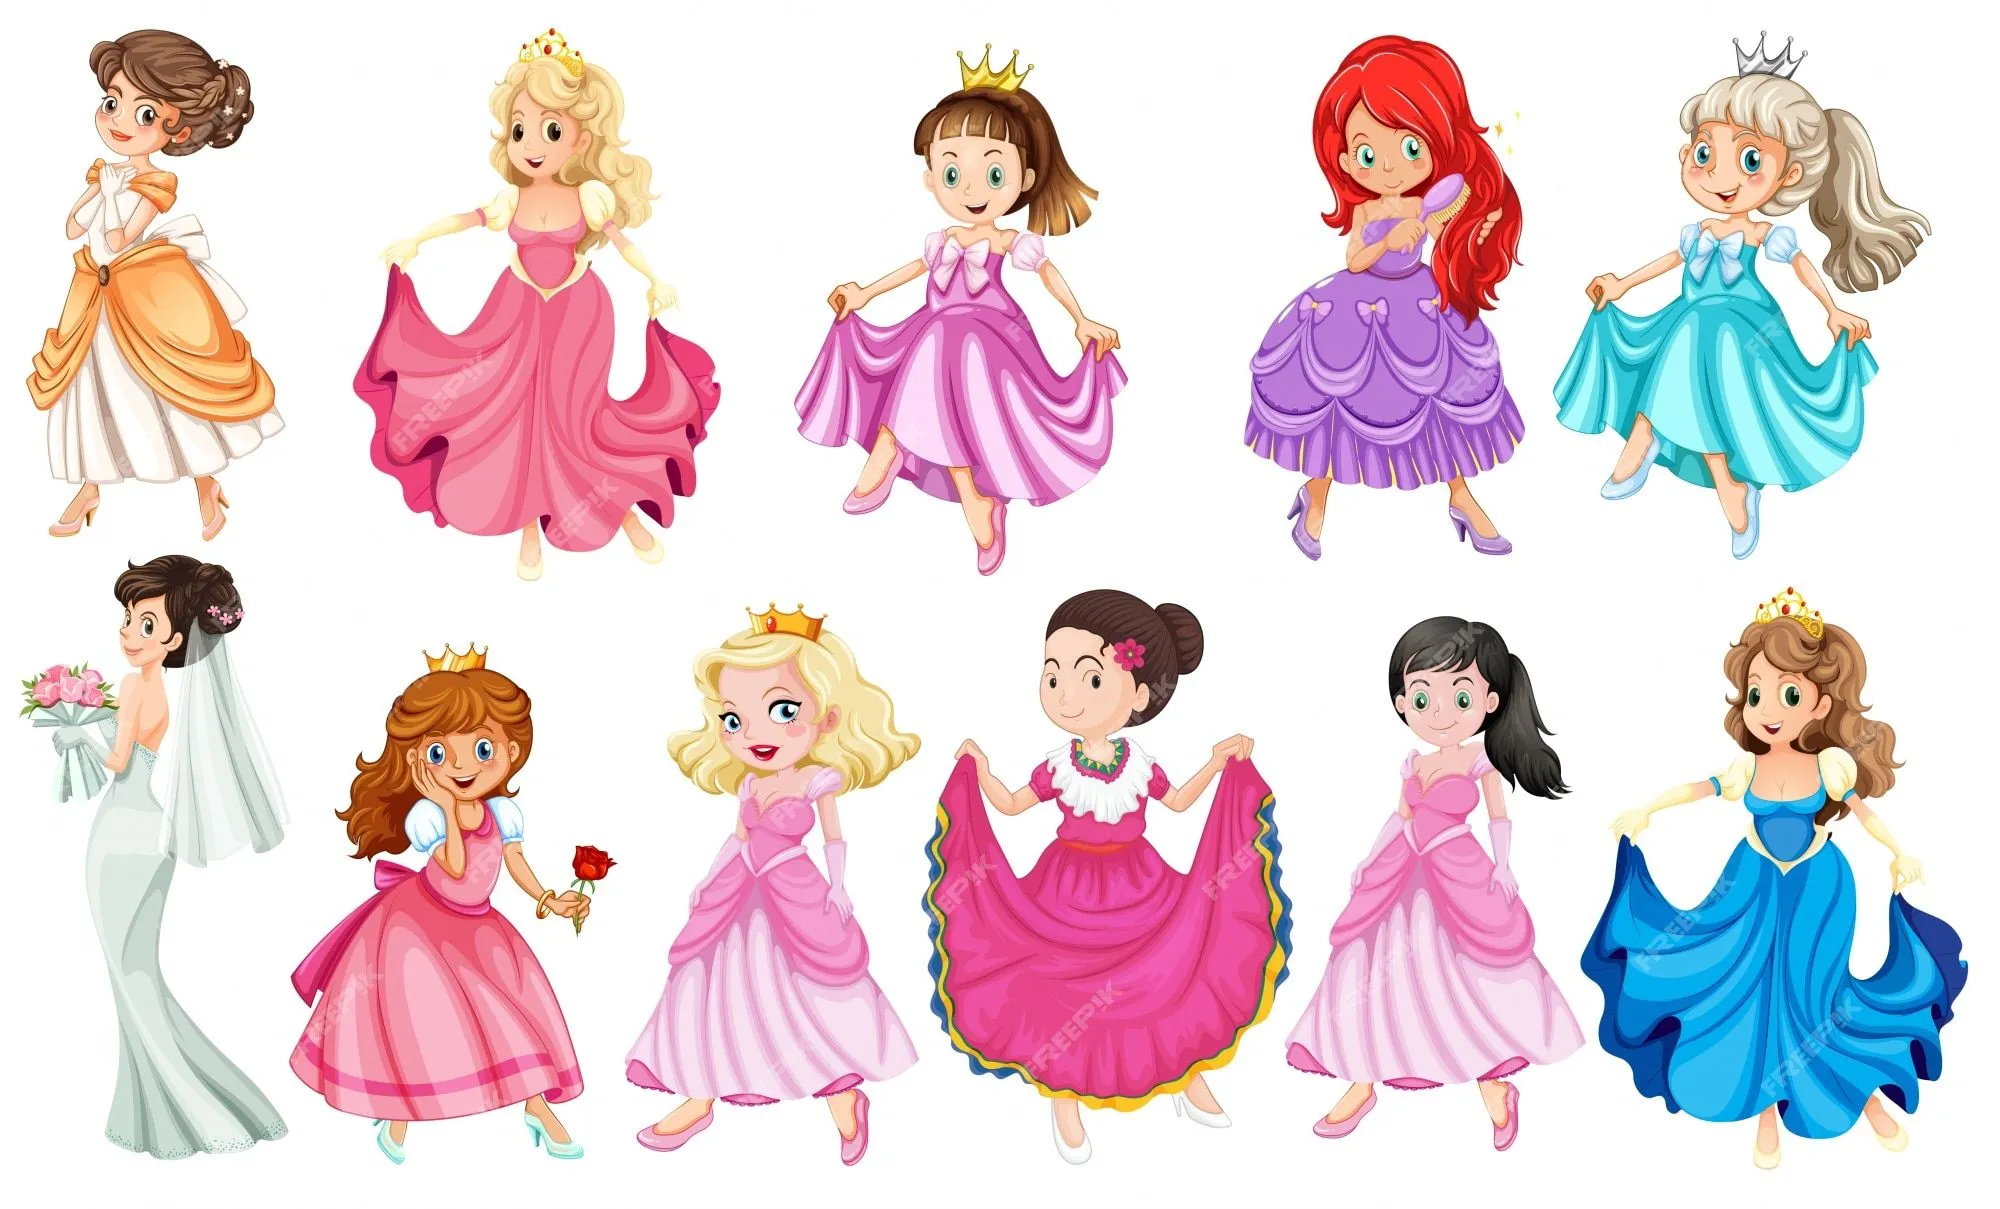 Imágenes de Princesas Disney Png - Descarga gratuita en Freepik